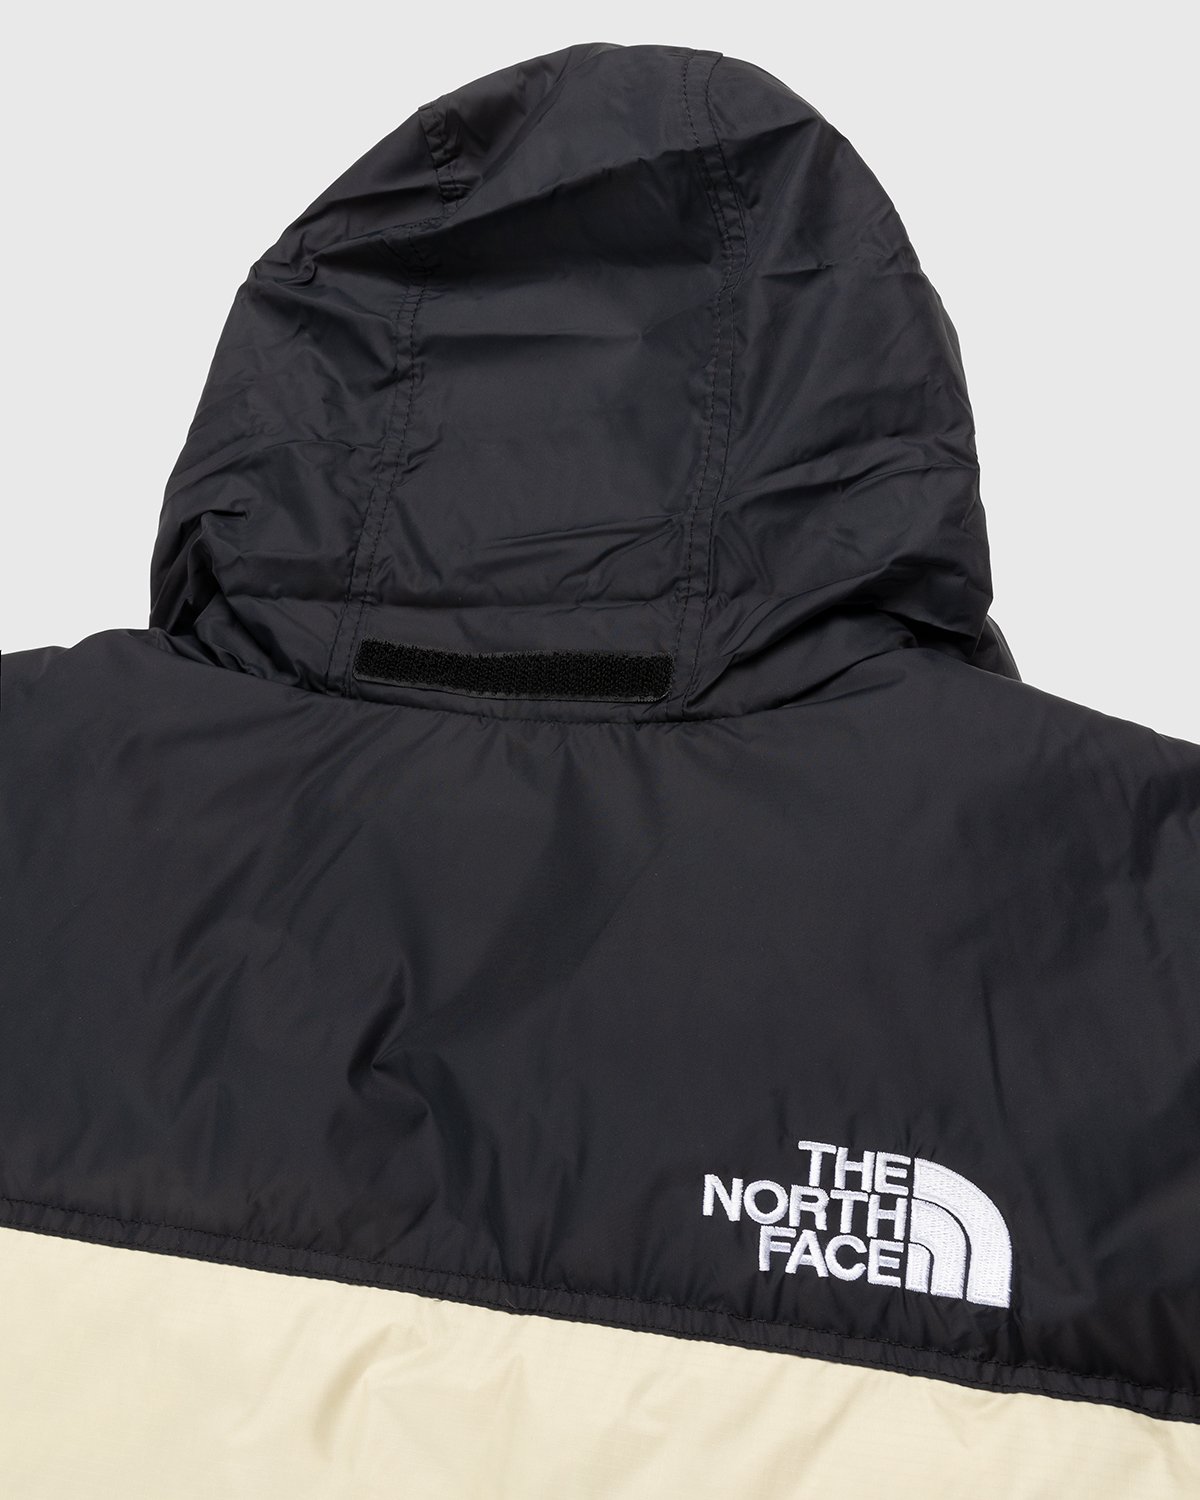 The North Face - 1996 Retro Nuptse Jacket Gravel - Clothing - Beige - Image 7